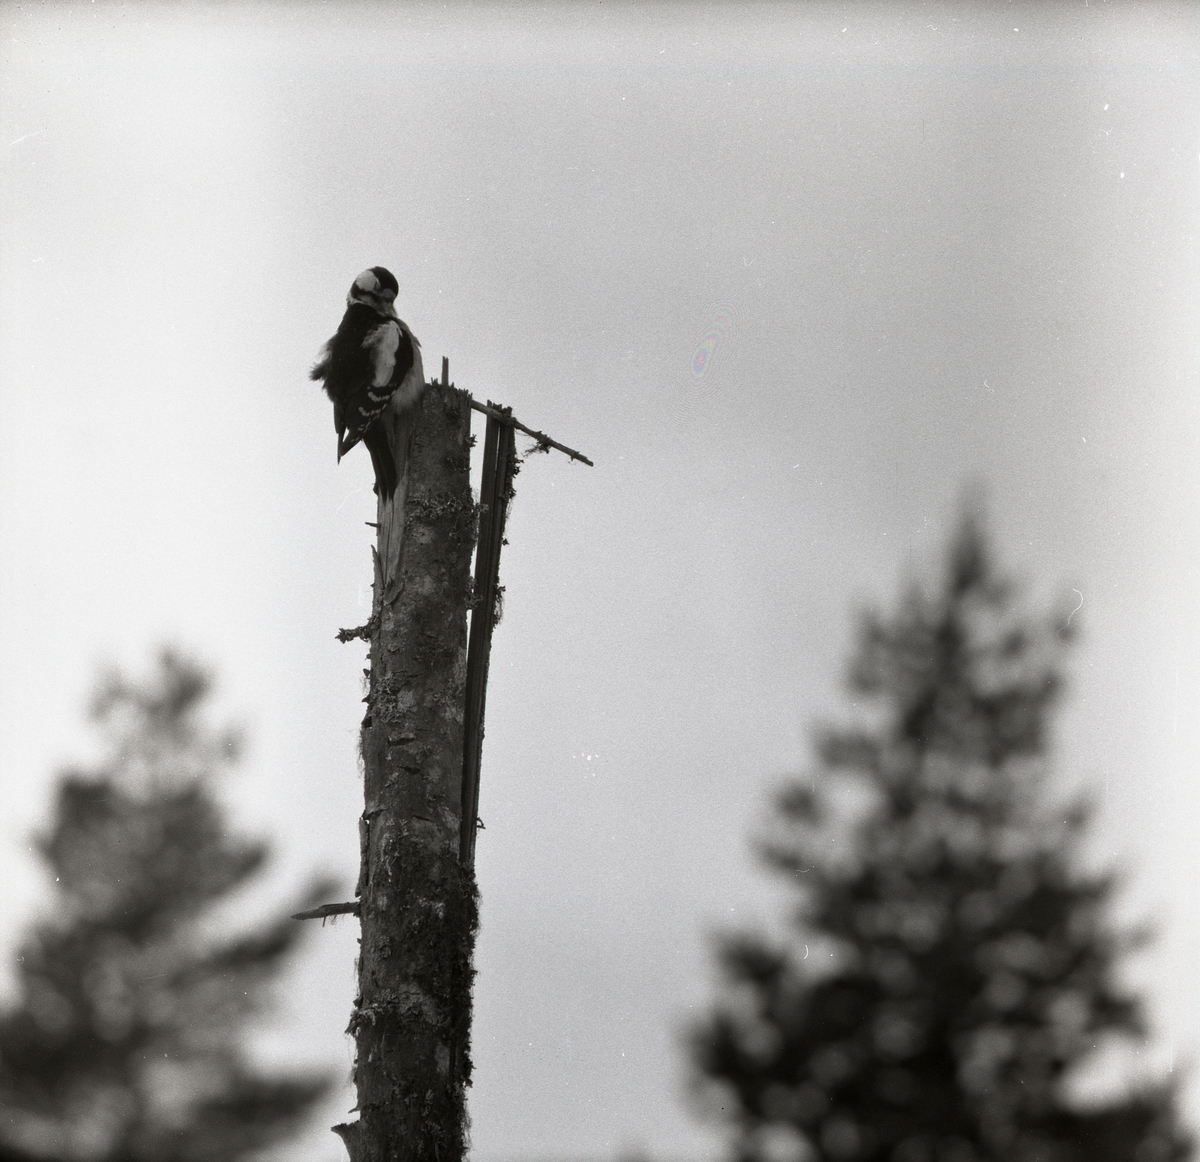 En större hackspett har landat på toppen av ett kapat träd. Den har näbben under vingen och tvättar fjäderdräkten. I bakgrunden skymtar trädspetsarna från skogens högre träd fram.